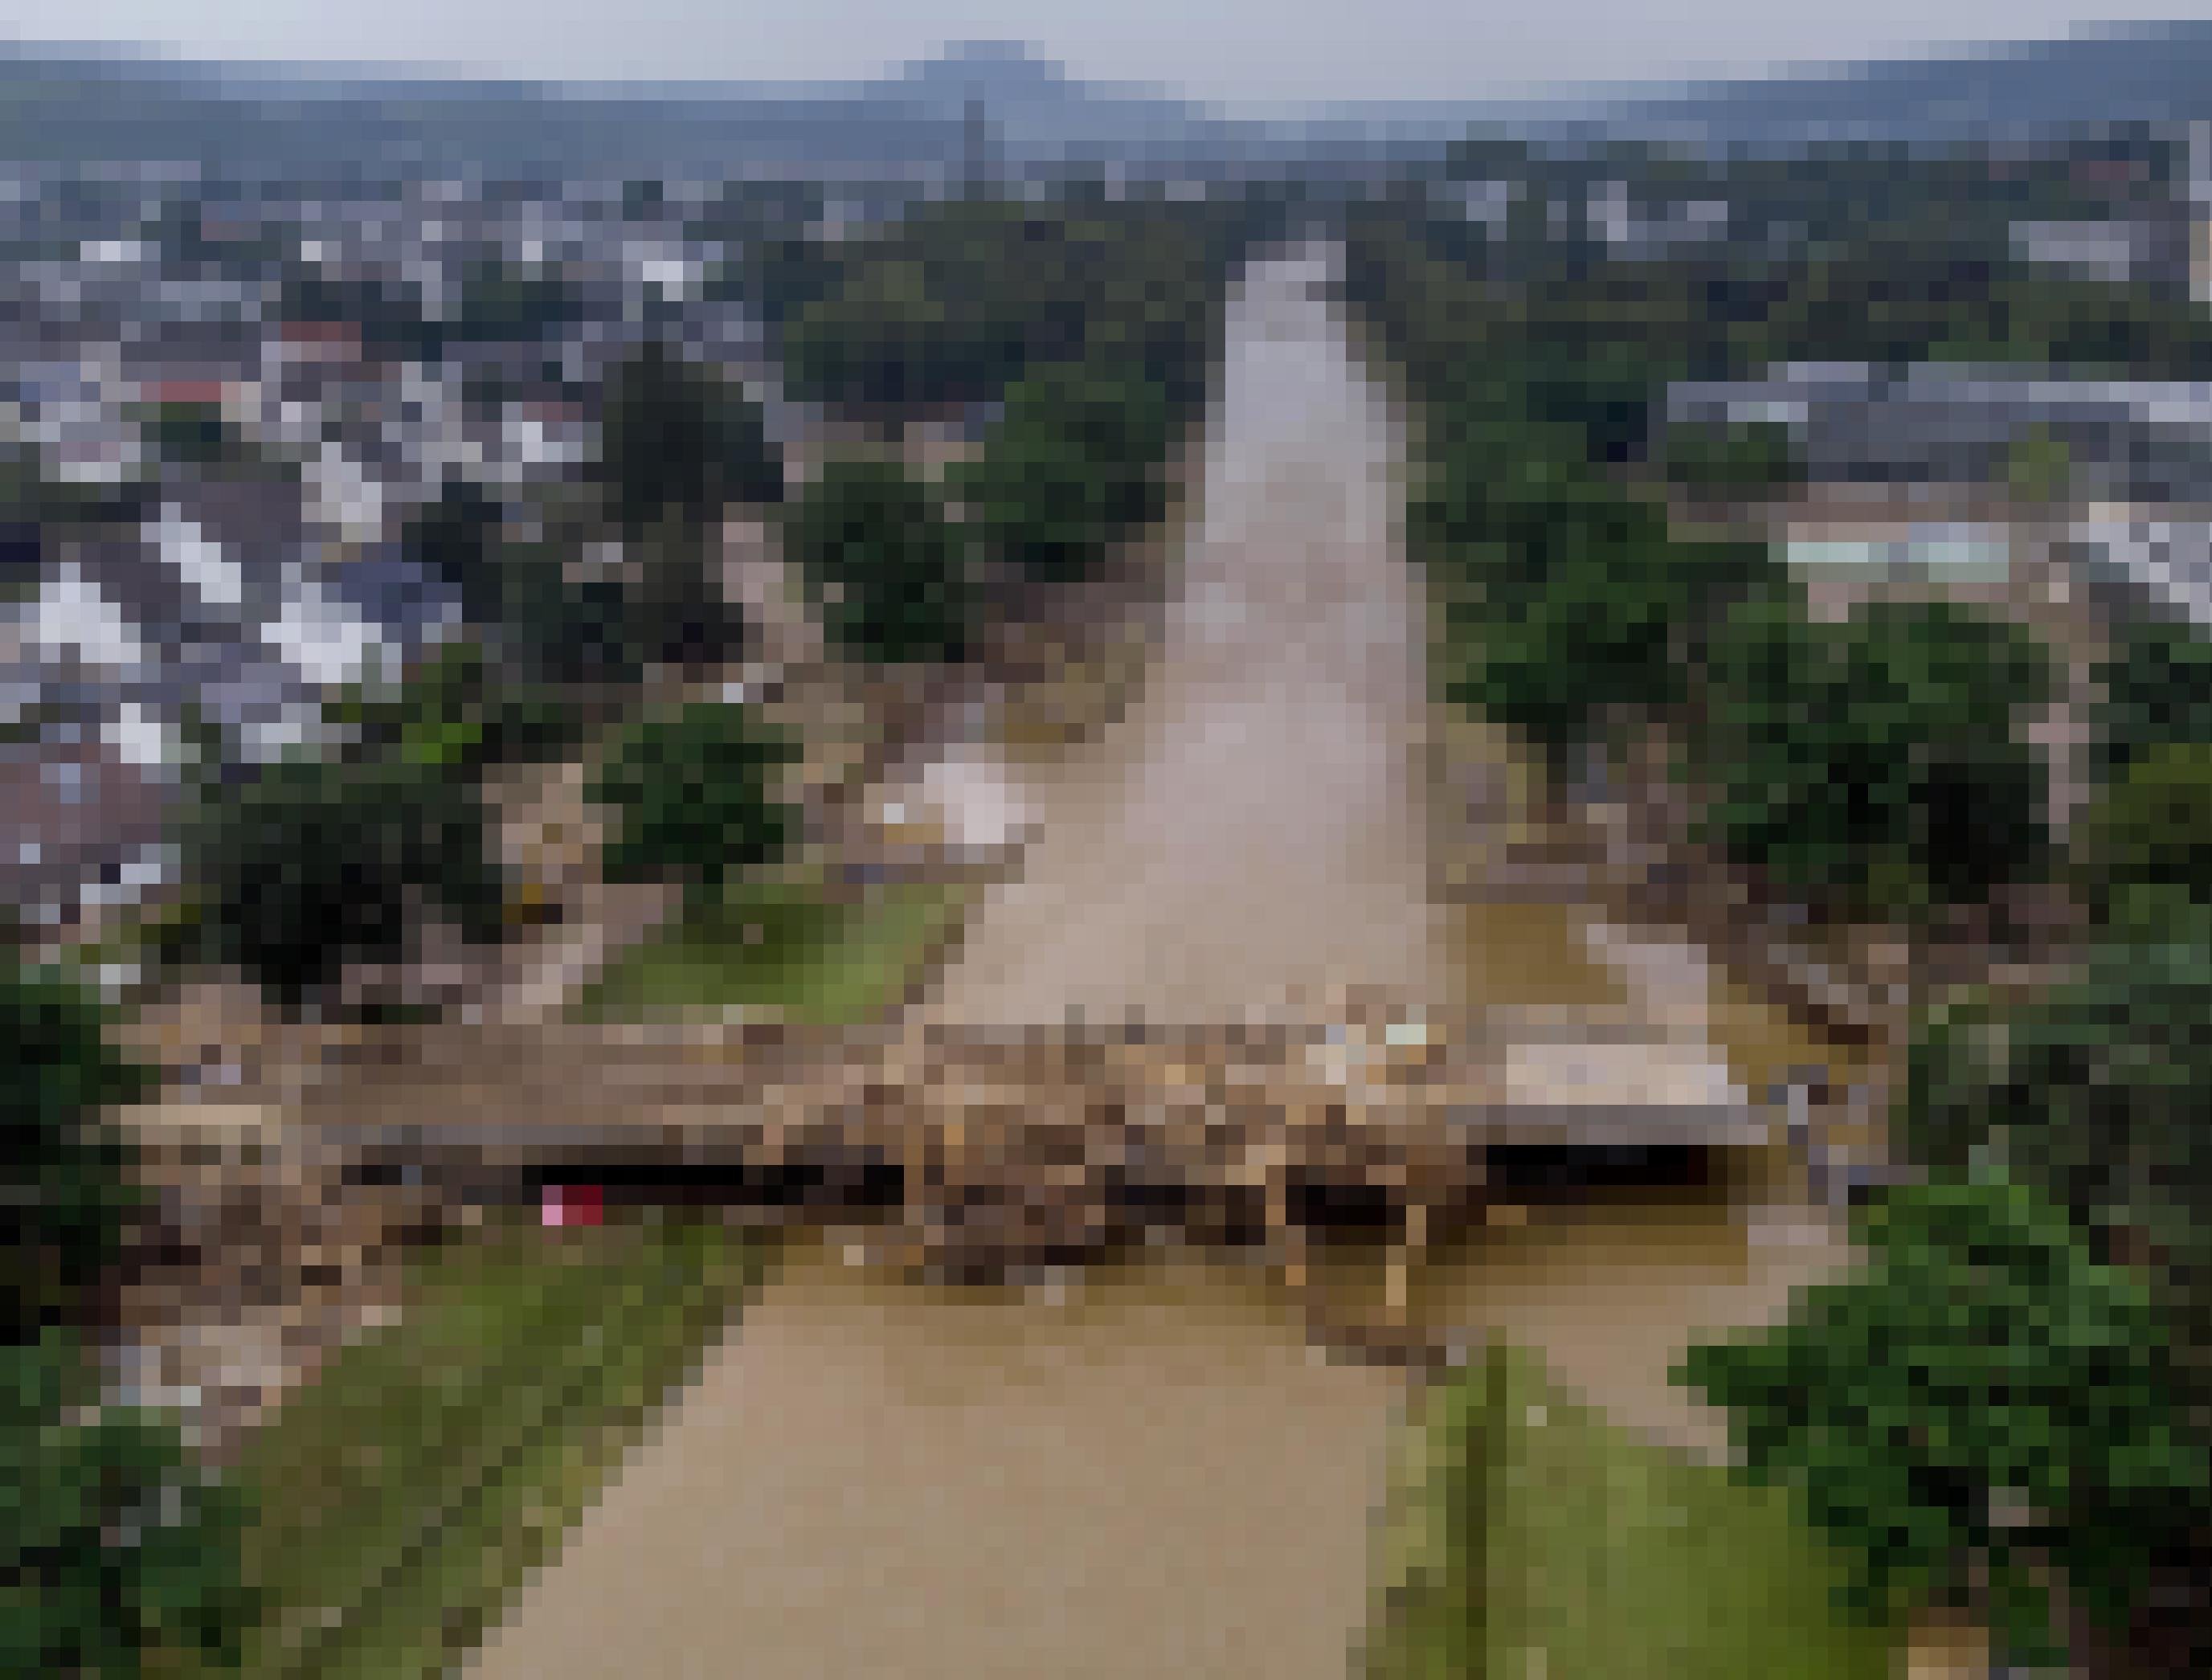 Geradliniger Ahr-Fluss mit stark beschädigter Brücke und dicht bebautem Ufer